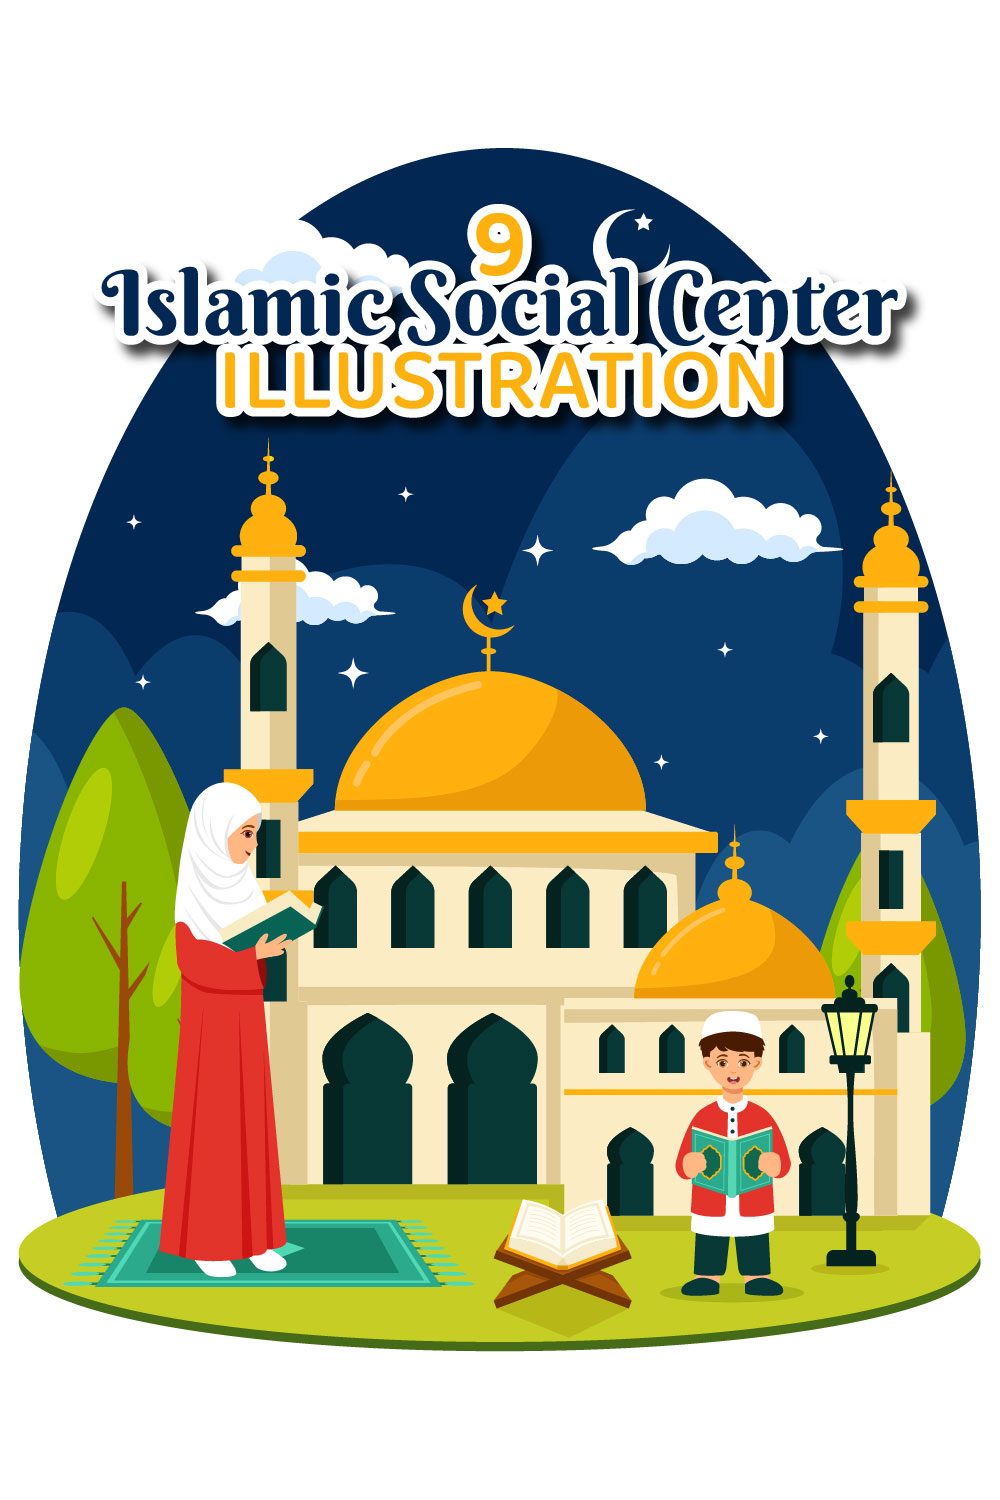 9 Islamic Social Center Illustration pinterest preview image.